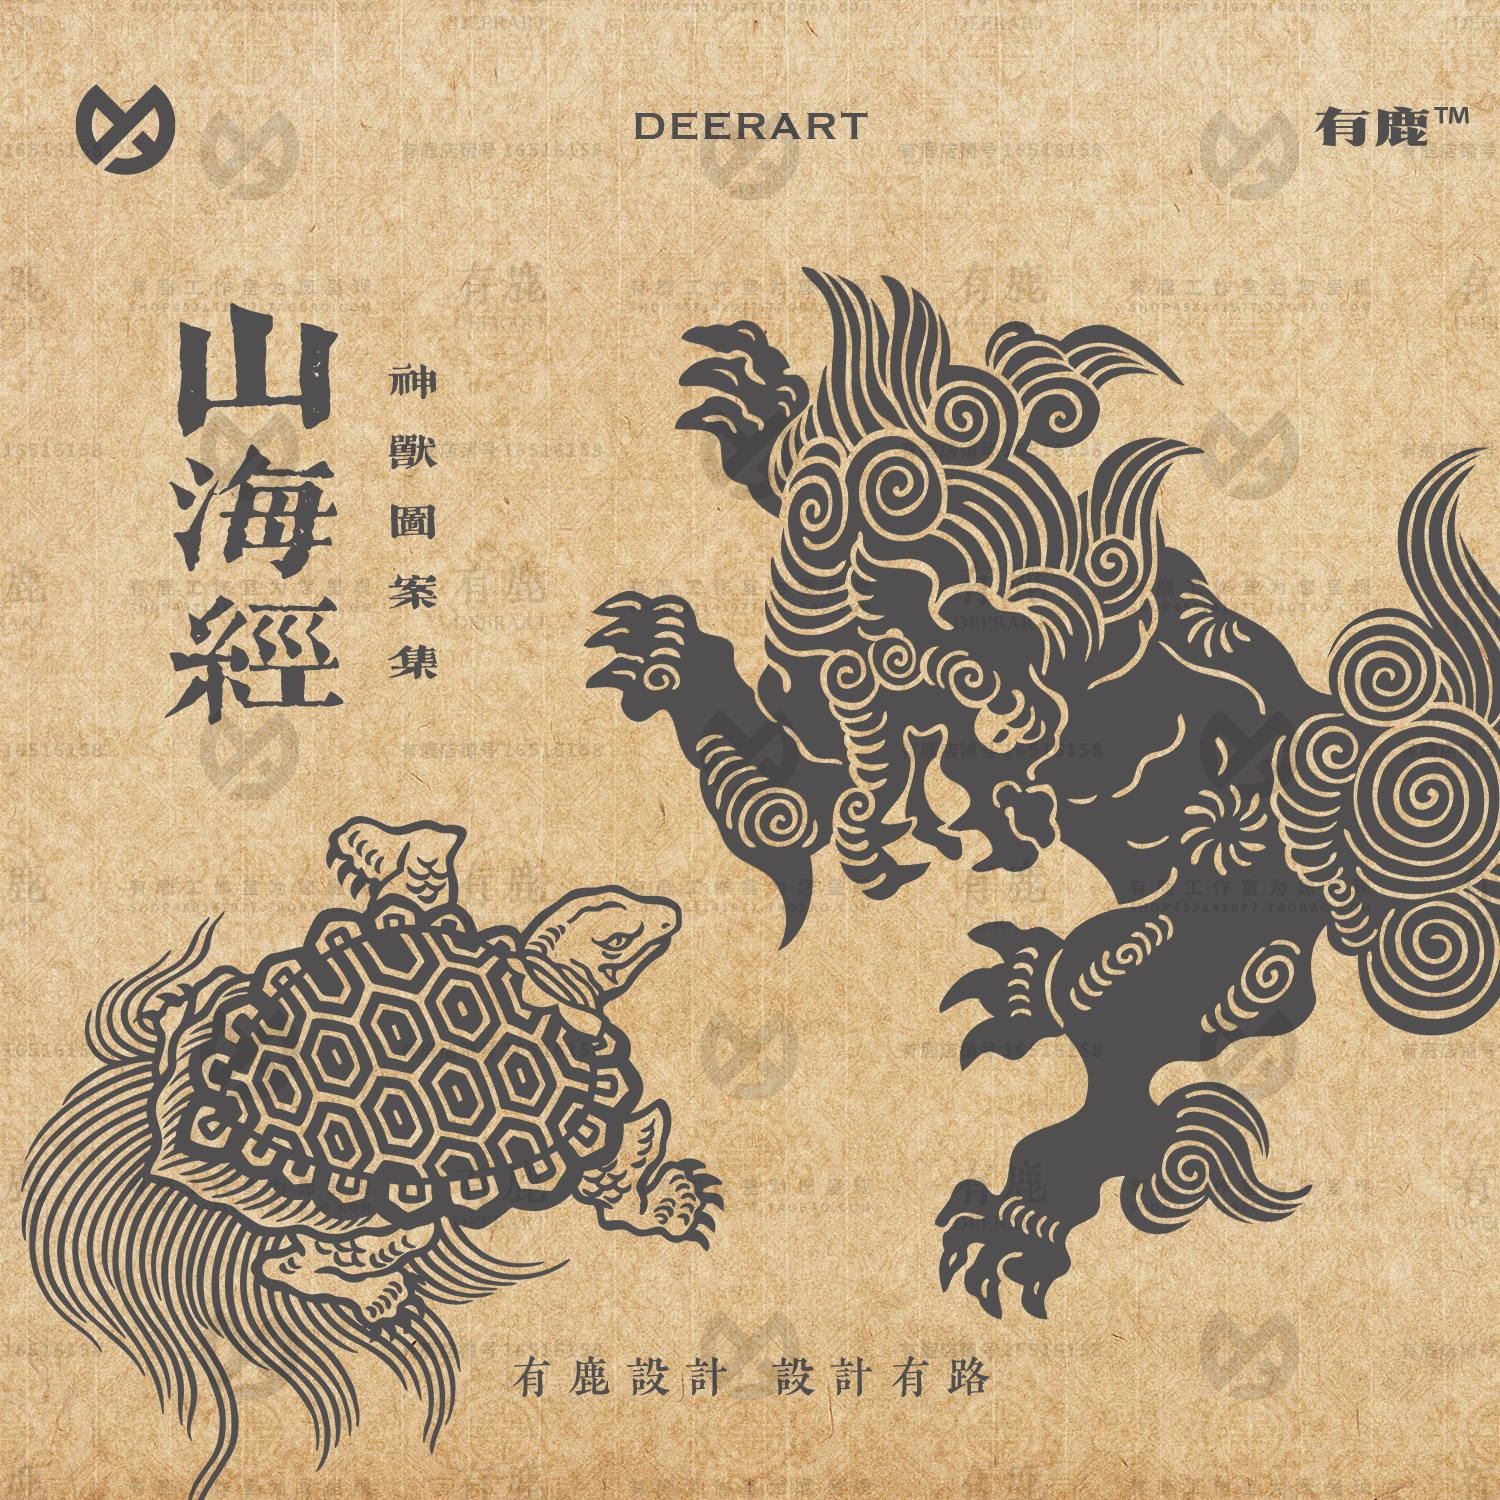 山海经神兽神话麒麟龙凤朱雀玄武古典中国风中式图案纹样矢量素材